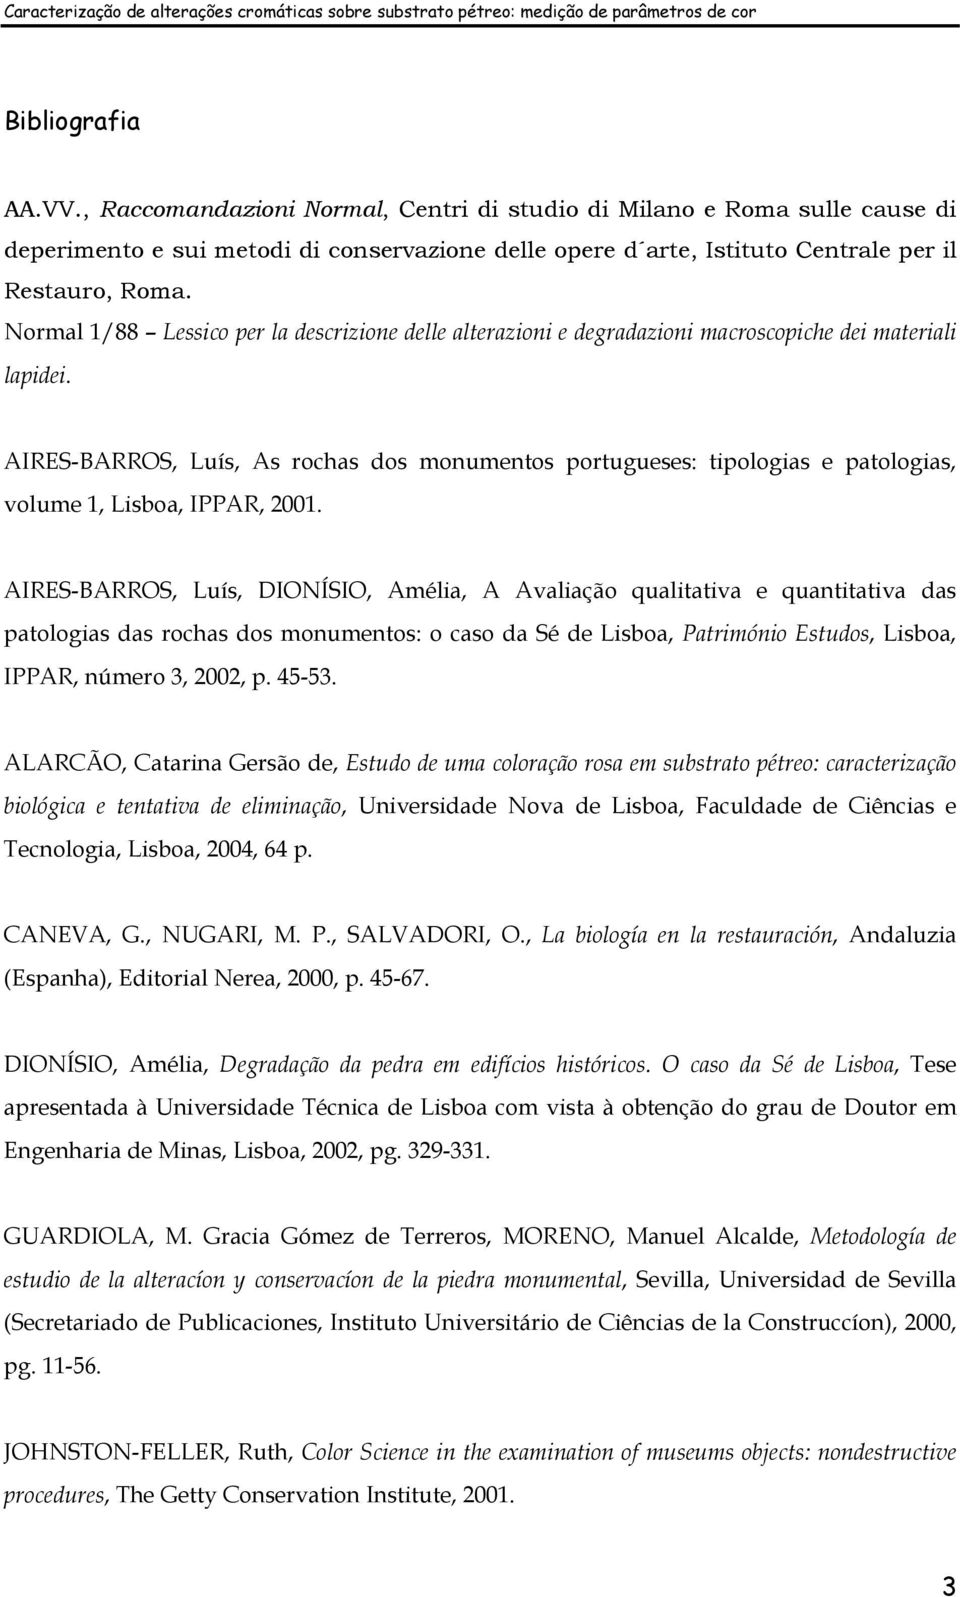 AIRES-BARROS, Luís, As rochas dos monumentos portugueses: tipologias e patologias, volume 1, Lisboa, IPPAR, 2001.